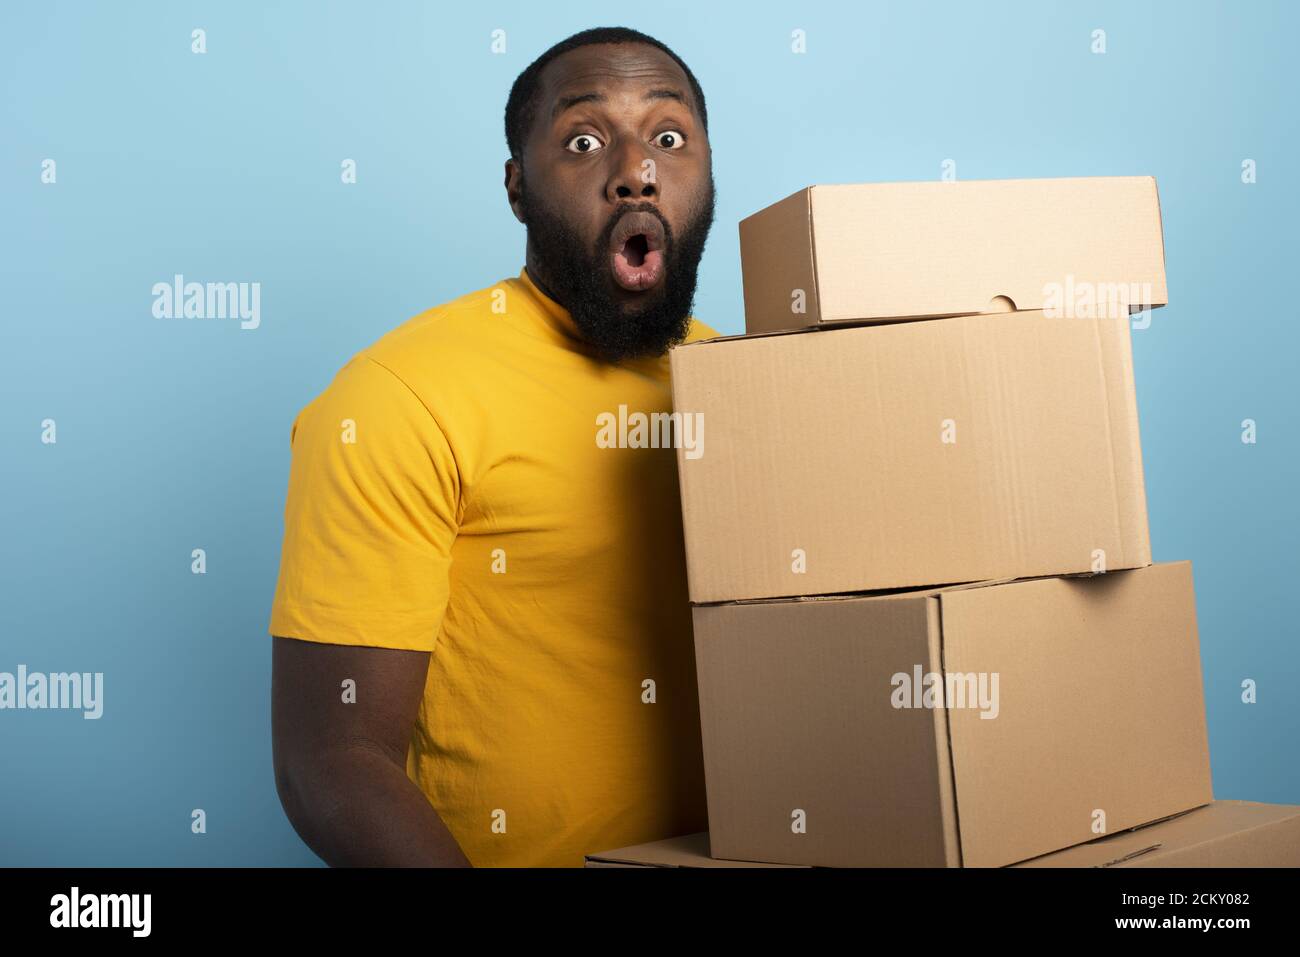 Überrascht Mann hält eine Menge von empfangenen Paketen. Cyanfarbener Hintergrund Stockfoto